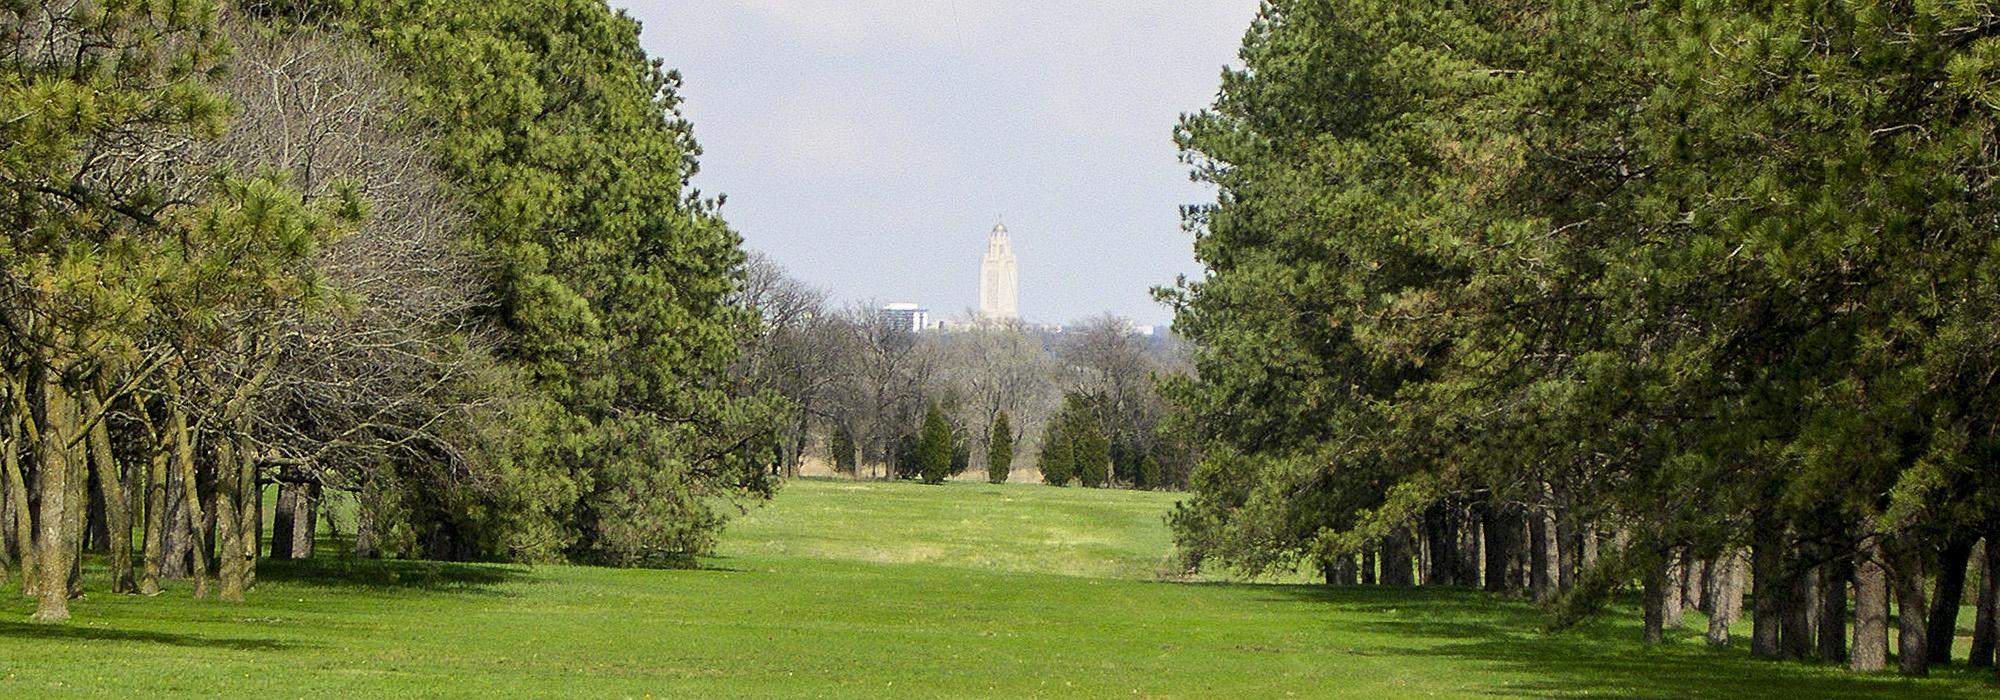 Nebraska State Capitol, Lincoln, NE